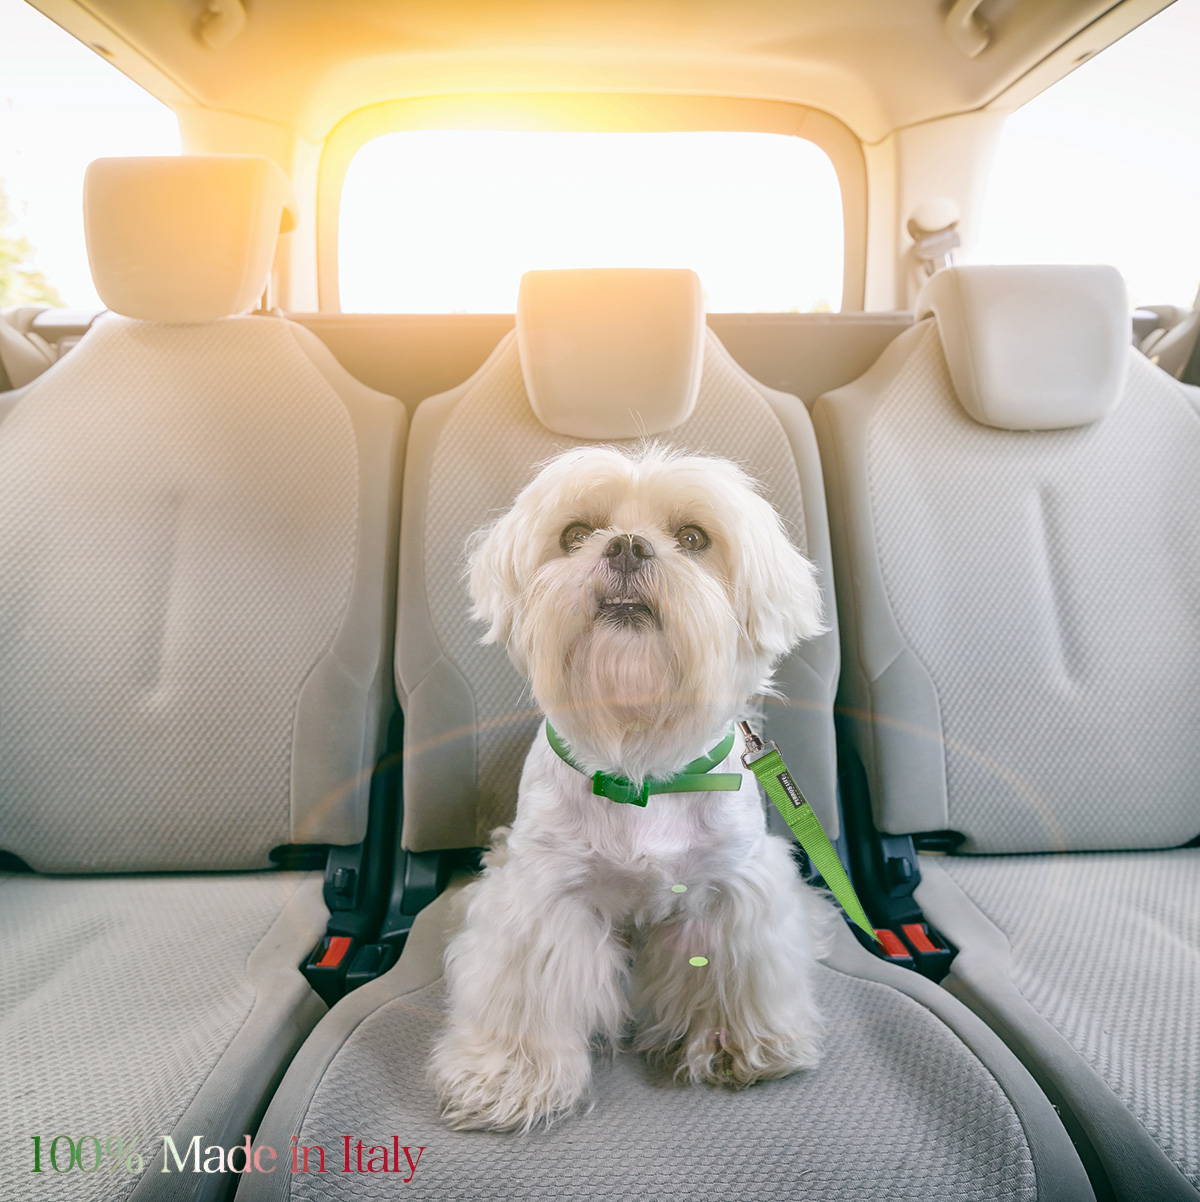 犬用 車用 PERROS シートベルトリード 車専用の安全リード 愛犬を確実に固定 シートベルトアタッチメント付き